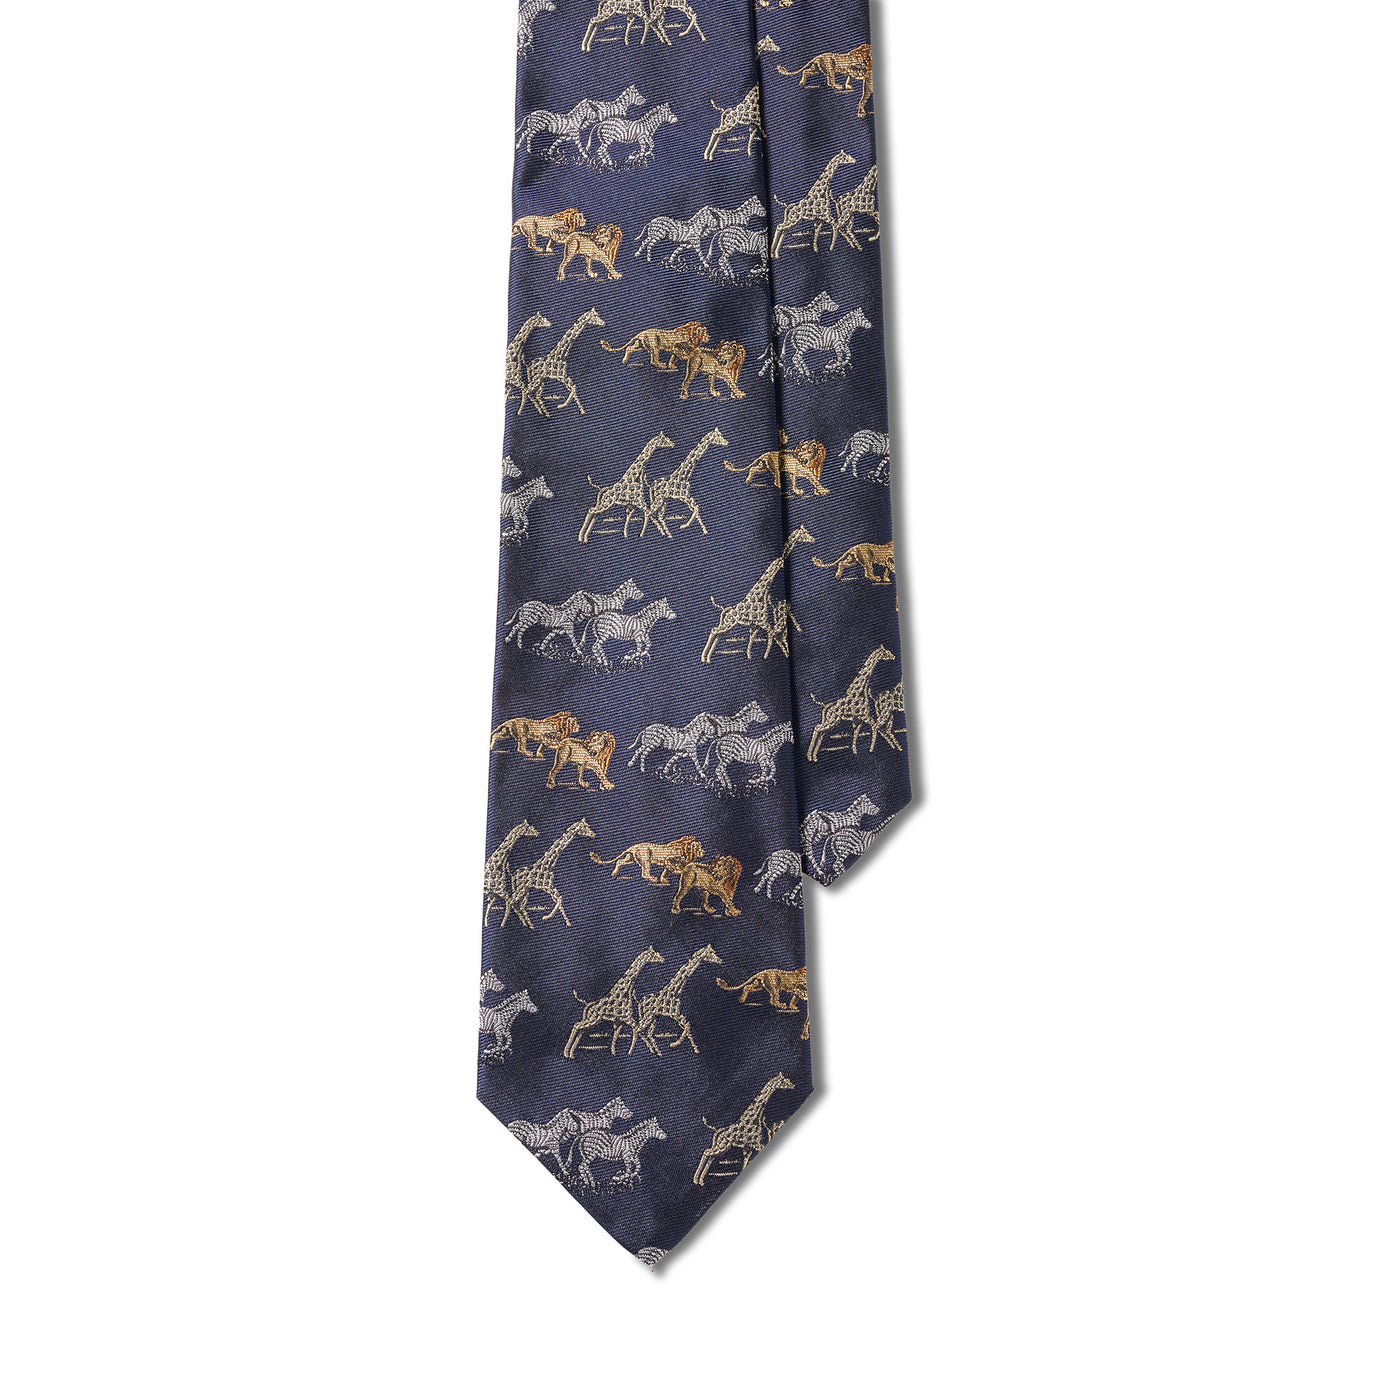 Serengeti Leone, Giraffa, & Zebra Handmade Silk Tie - Navy & Yellow